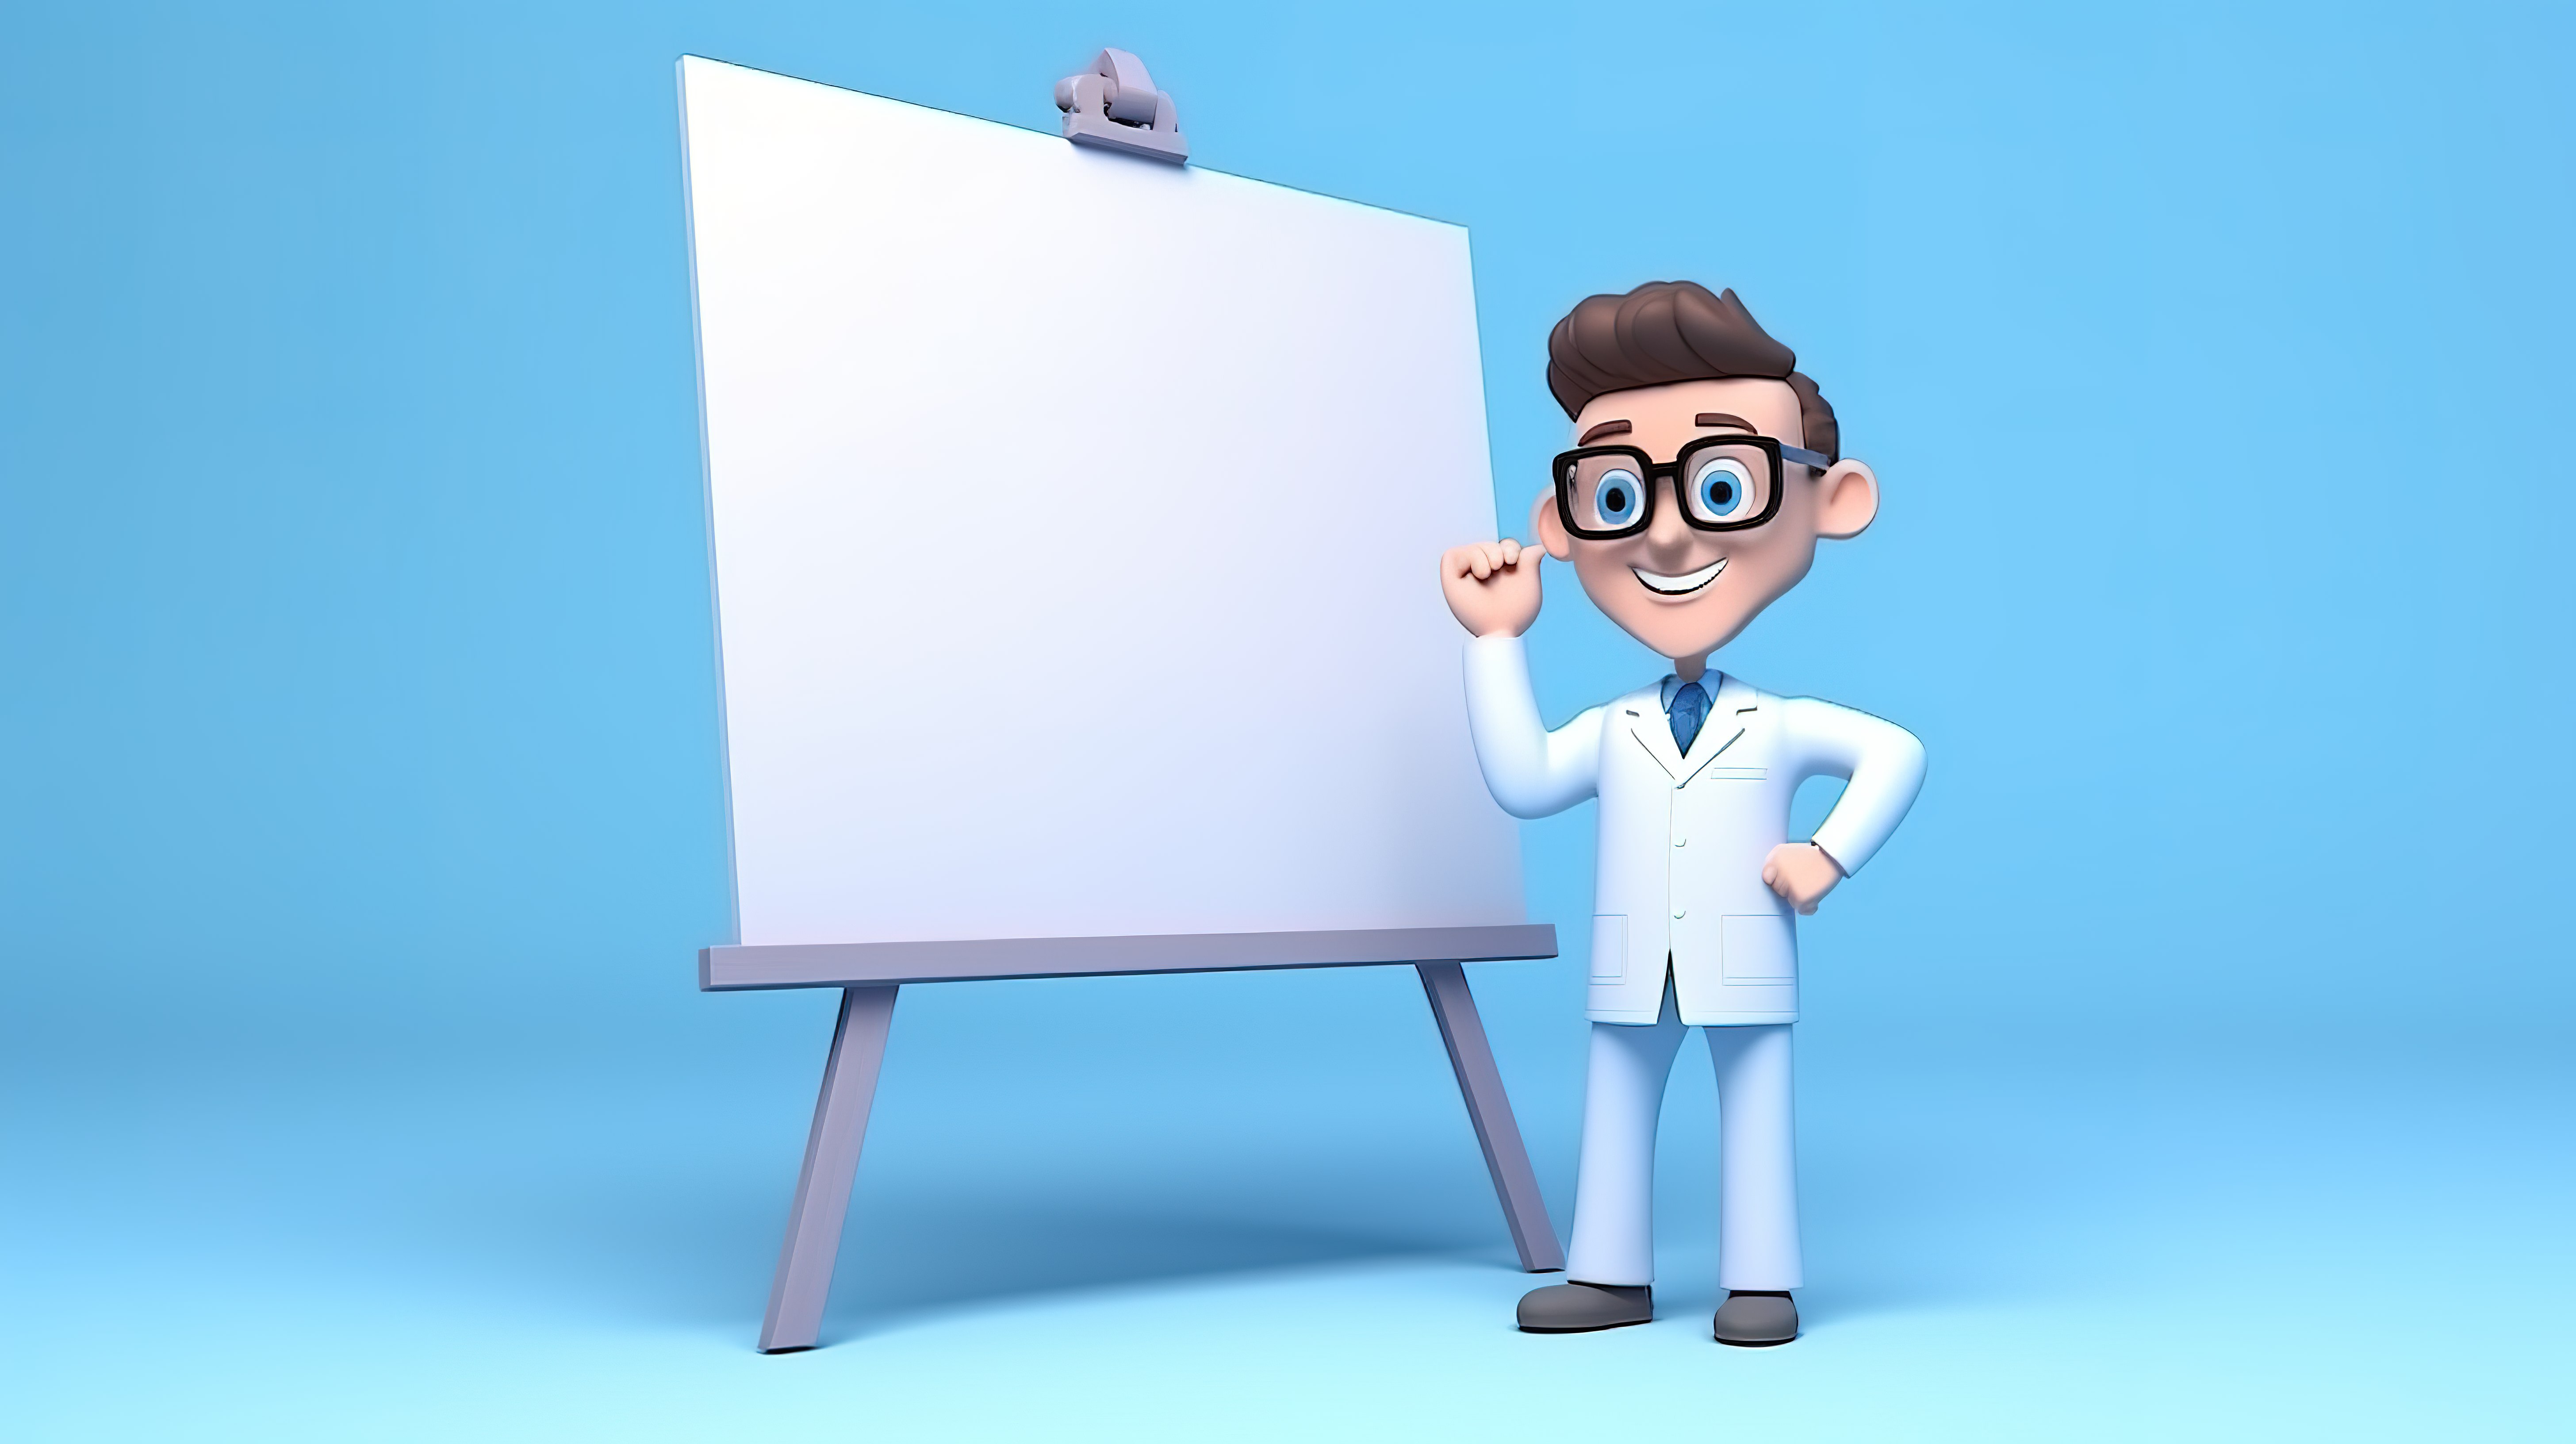 一位男医生站在演示板旁边演示 3D 视力测试的卡通风格插图图片